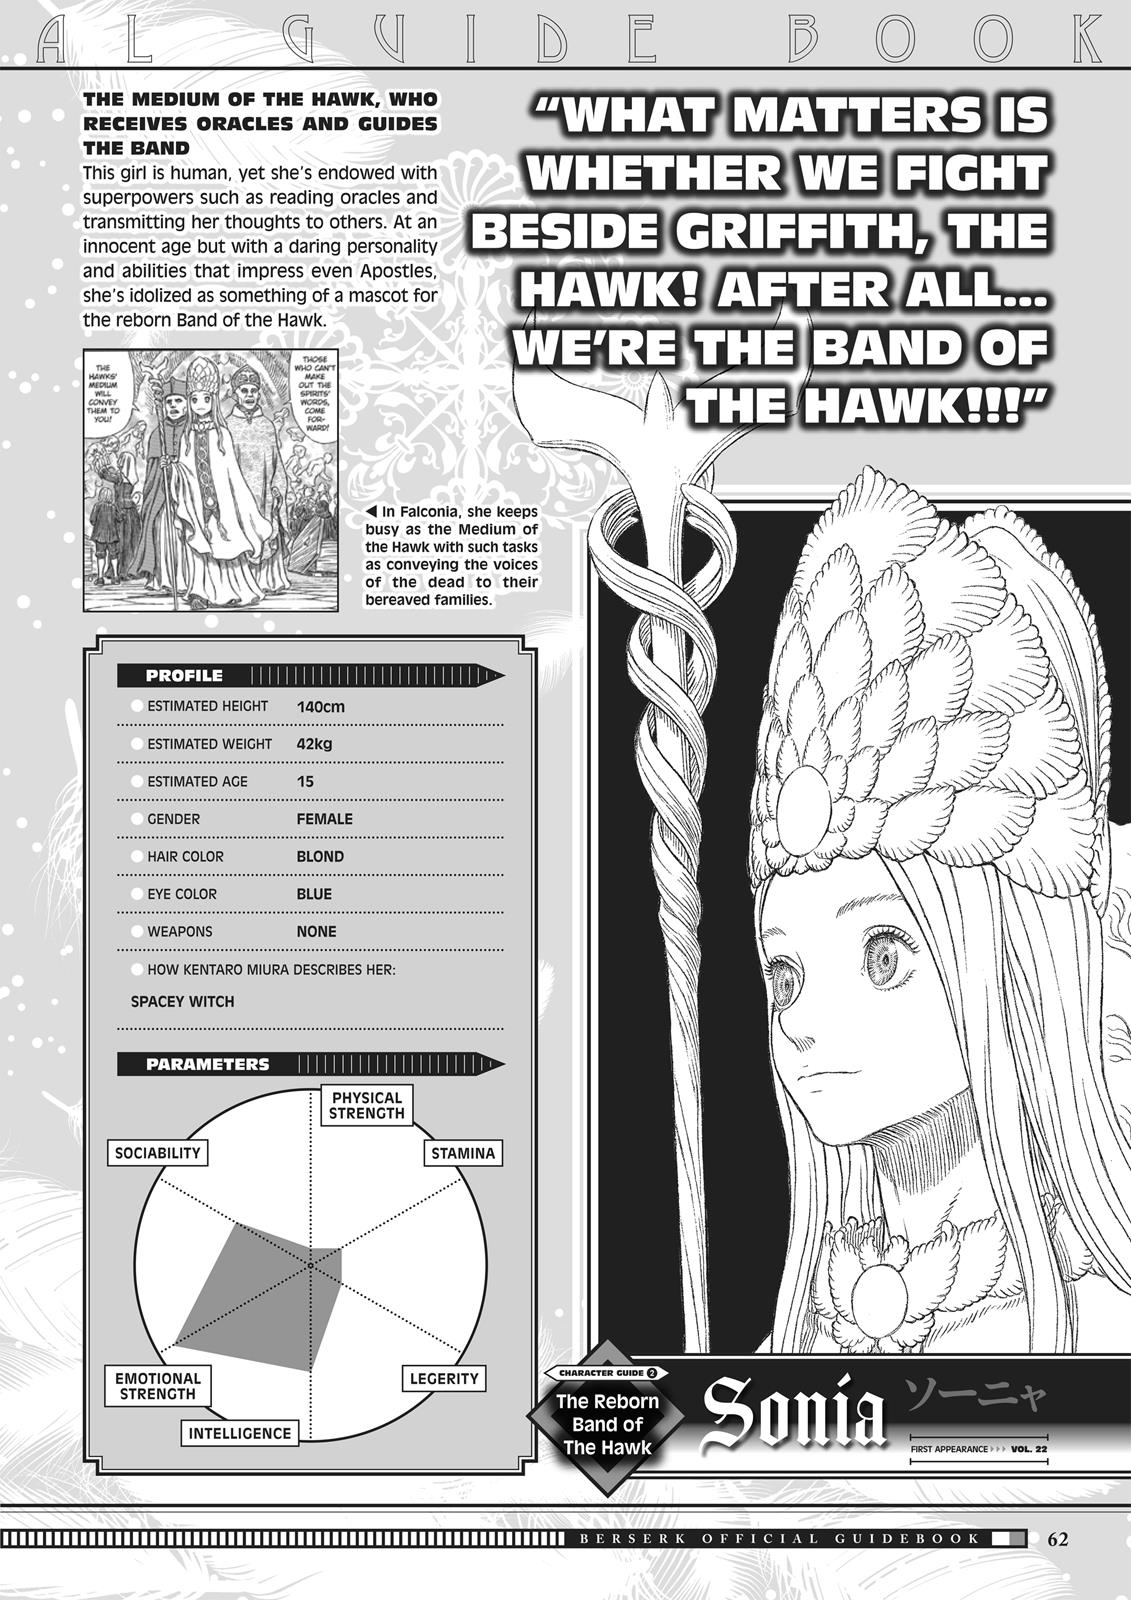 Berserk Manga Chapter 350.5 image 061